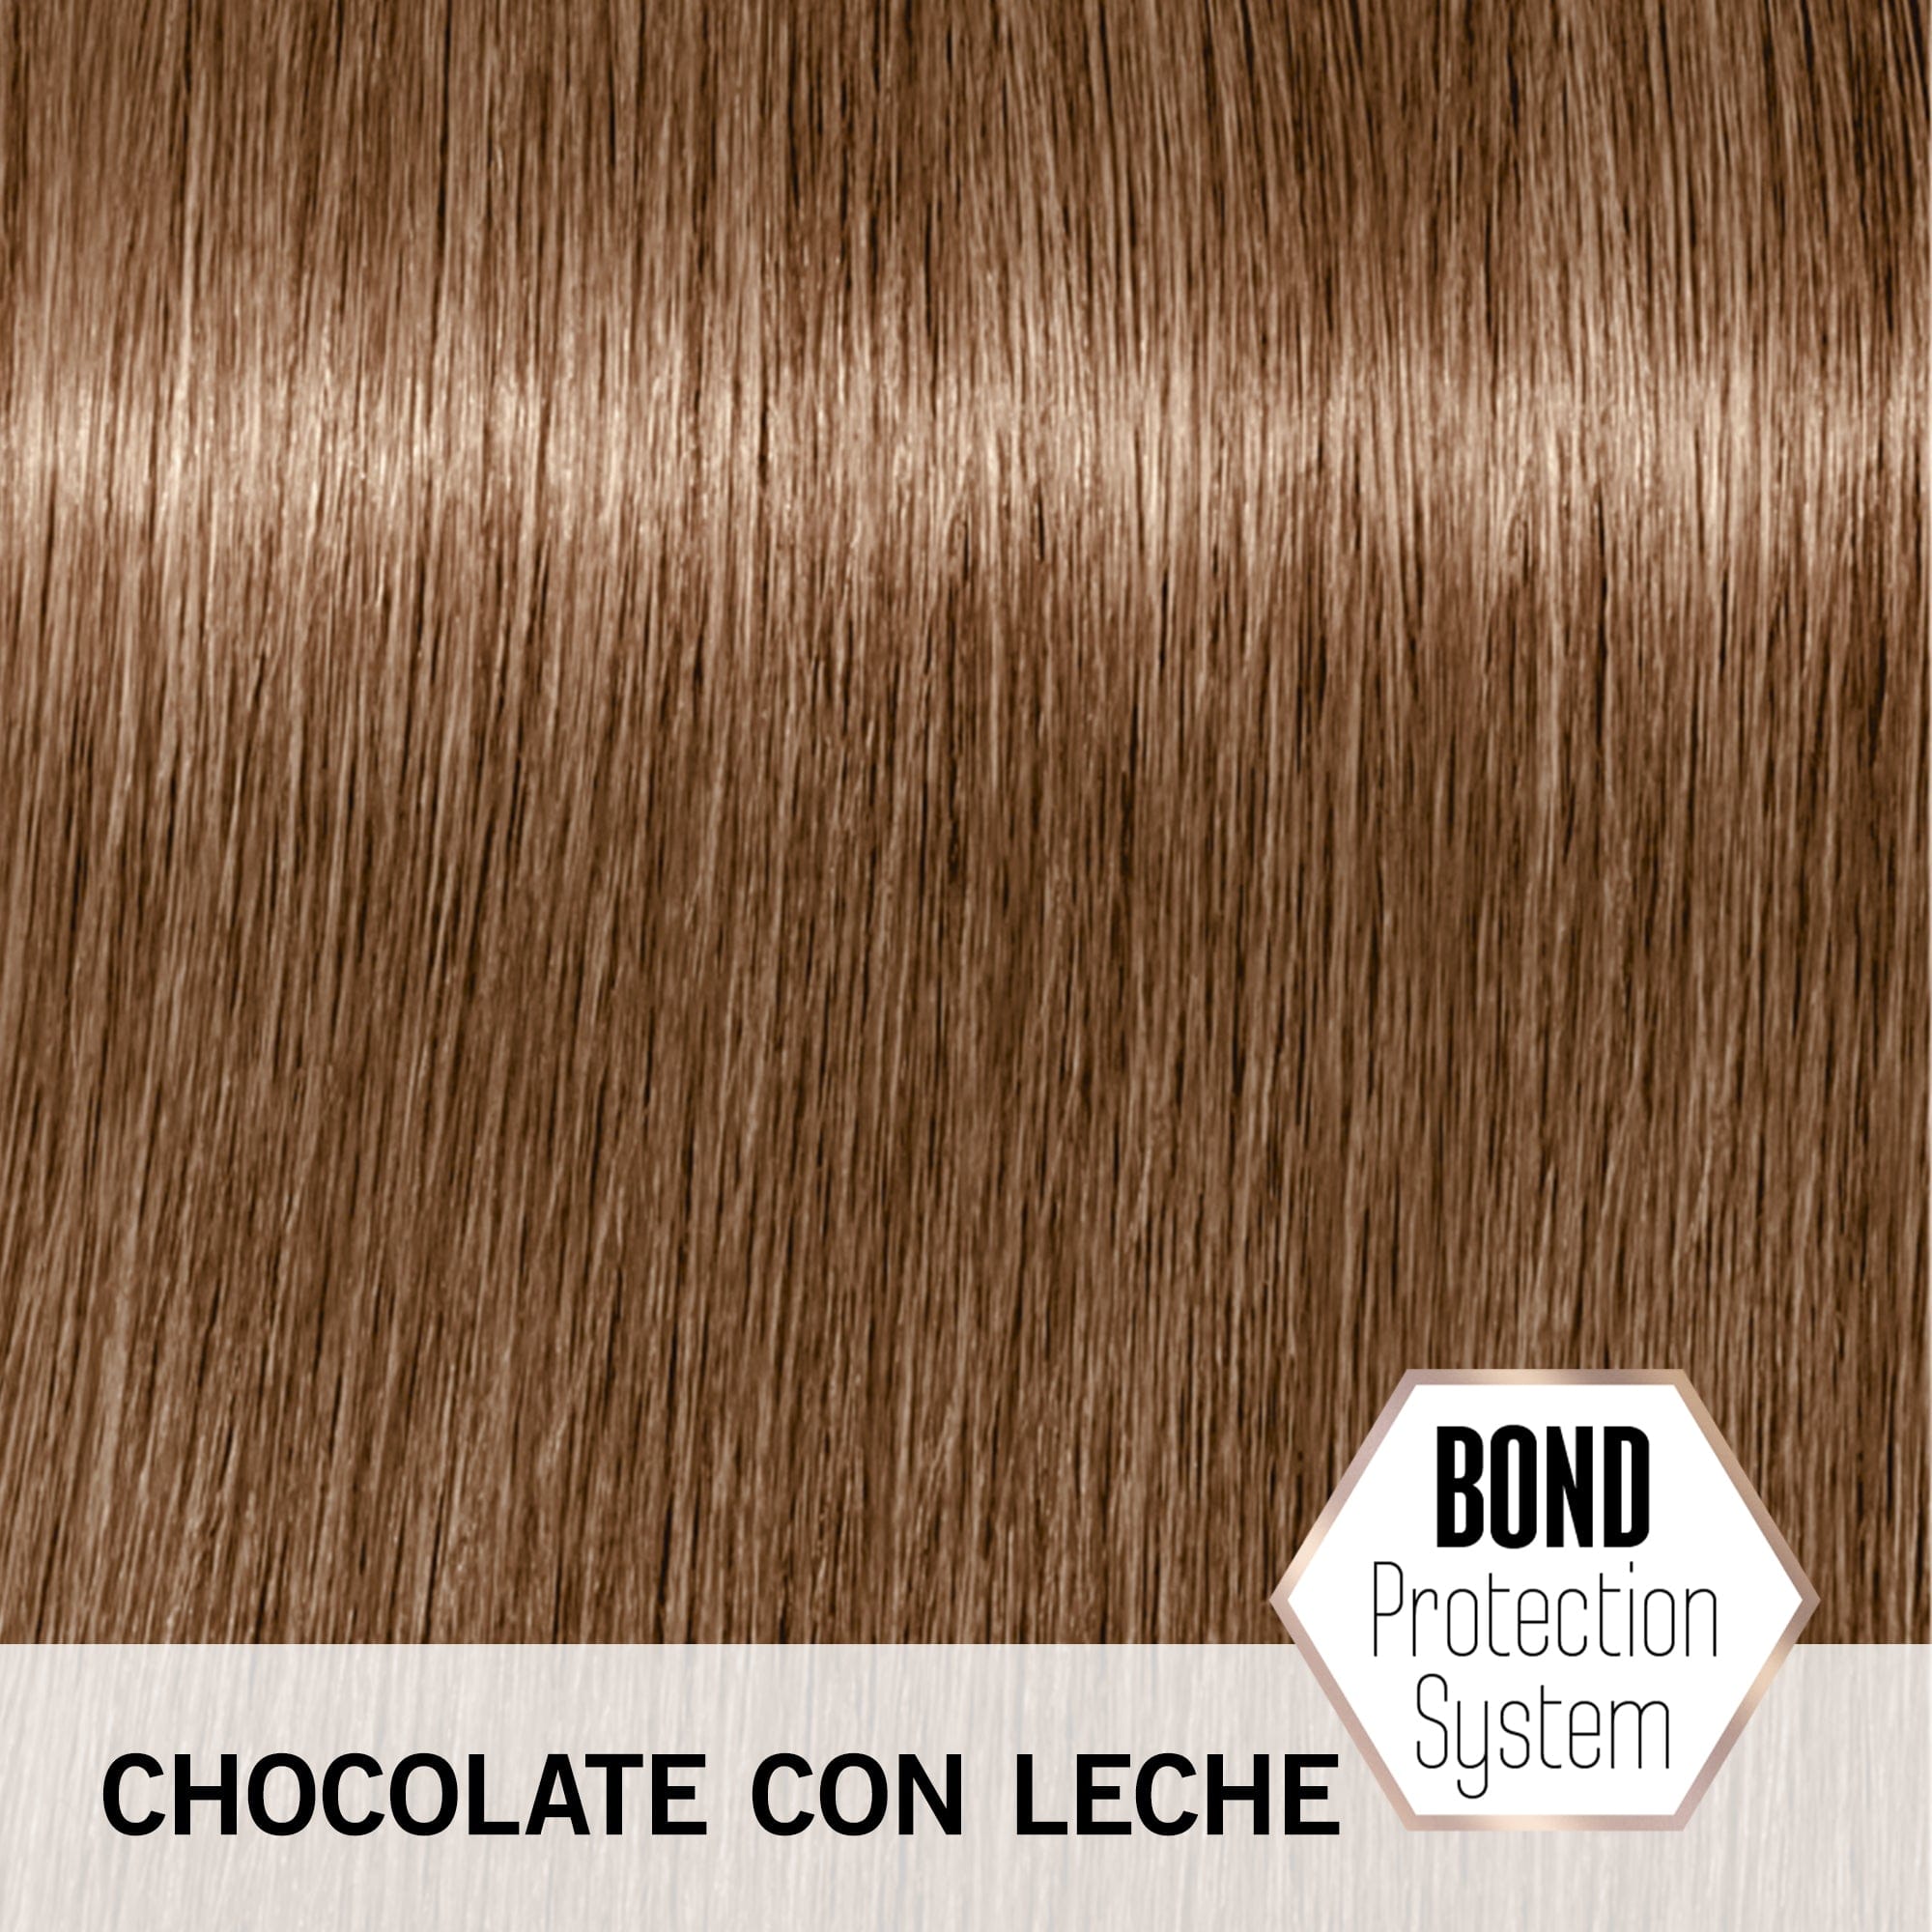 BLONDME Matiz BLONDME Matización Intensa Tono Chocolate con Leche 60ml Roberta Beauty Club Tienda Online Productos de Peluqueria